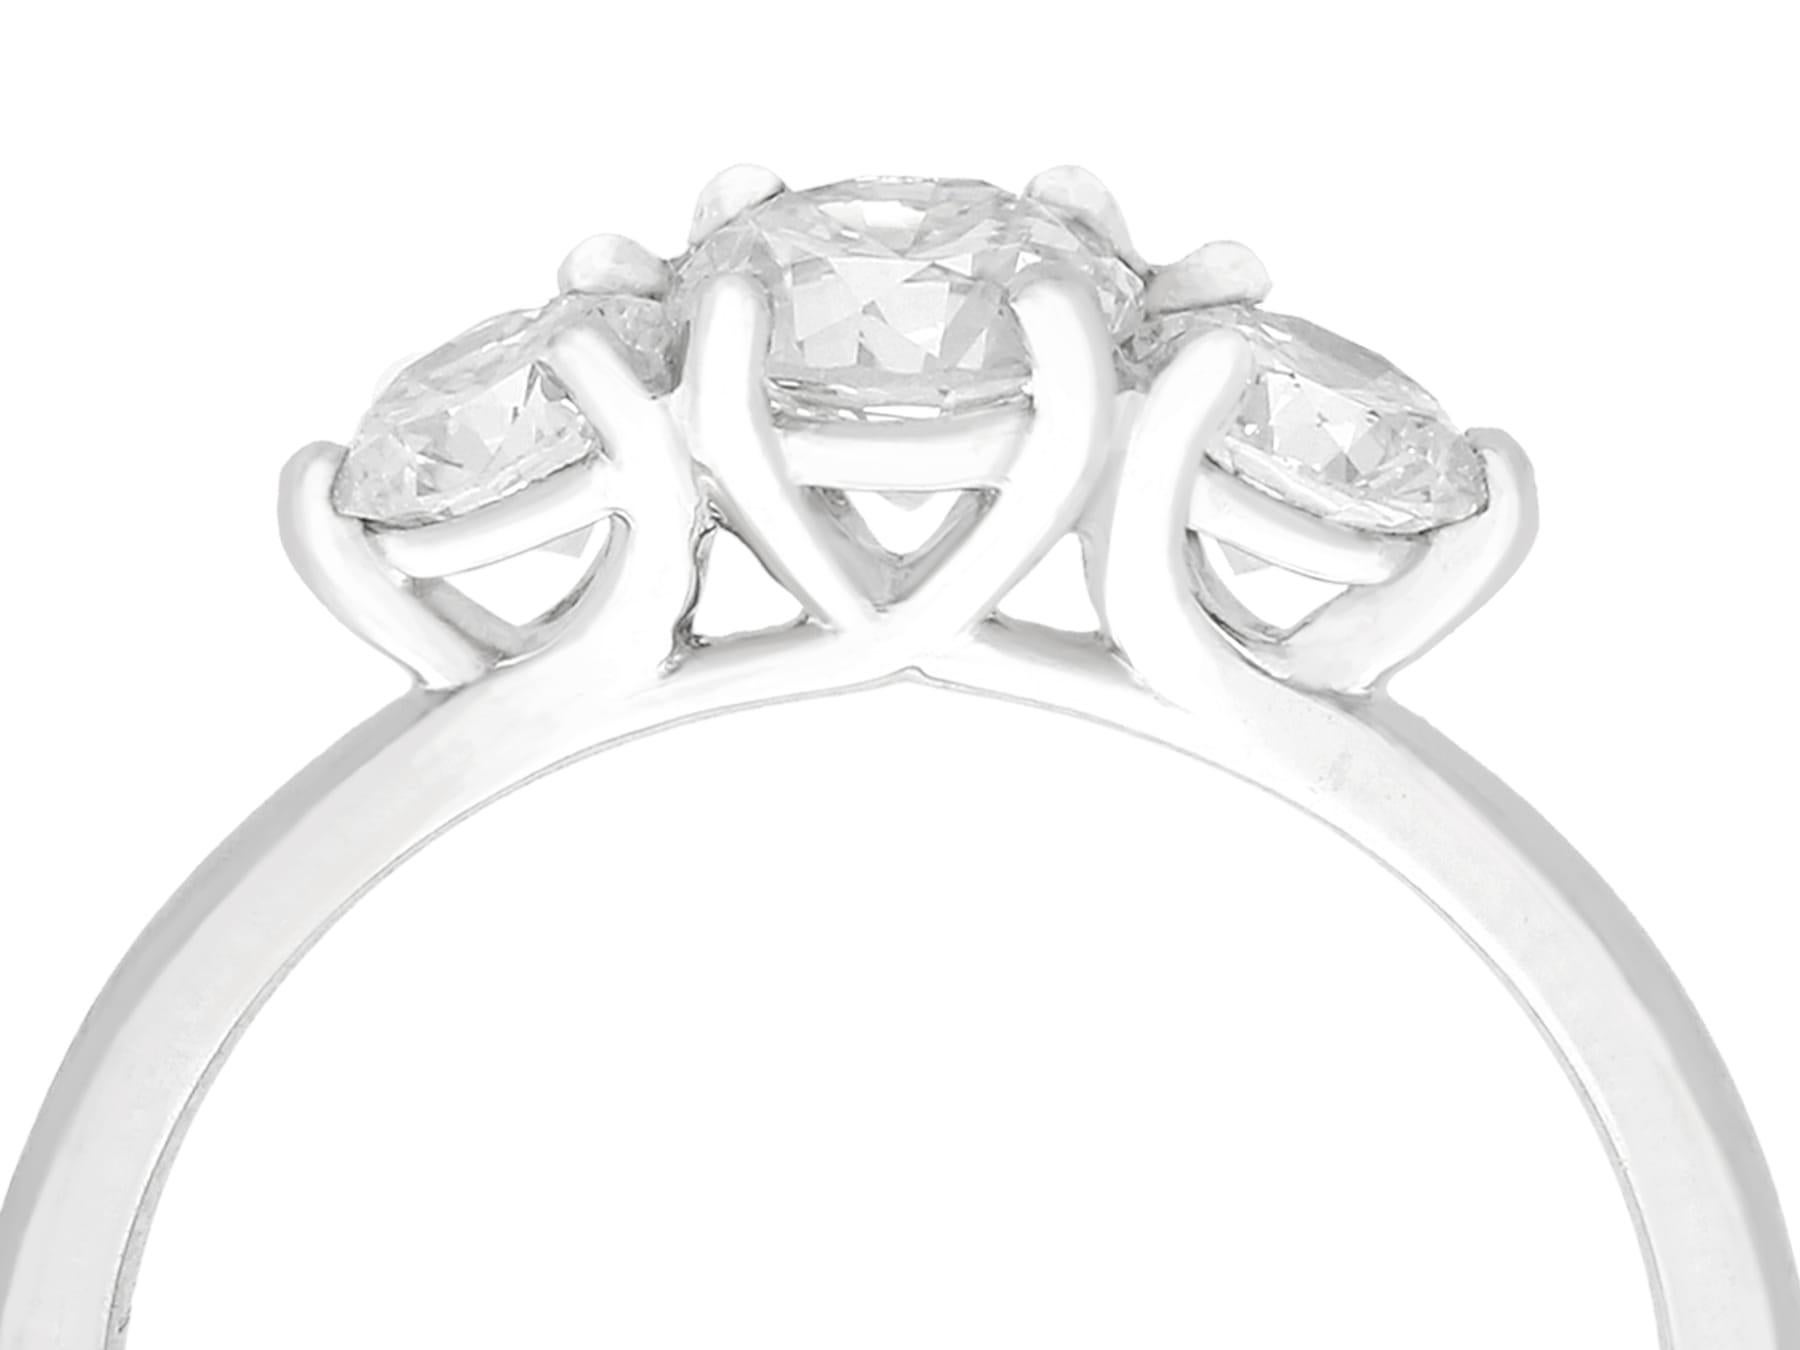 Eine atemberaubende 1,10 Karat Diamant und Platin drei Stein Kleid Ring; Teil unserer vielfältigen antiken Schmuck und Estate Jewelry Collections.

Dieser atemberaubende Vintage- und Contemporary-Diamant-Trilogie-Ring ist aus Platin gefertigt.

Die